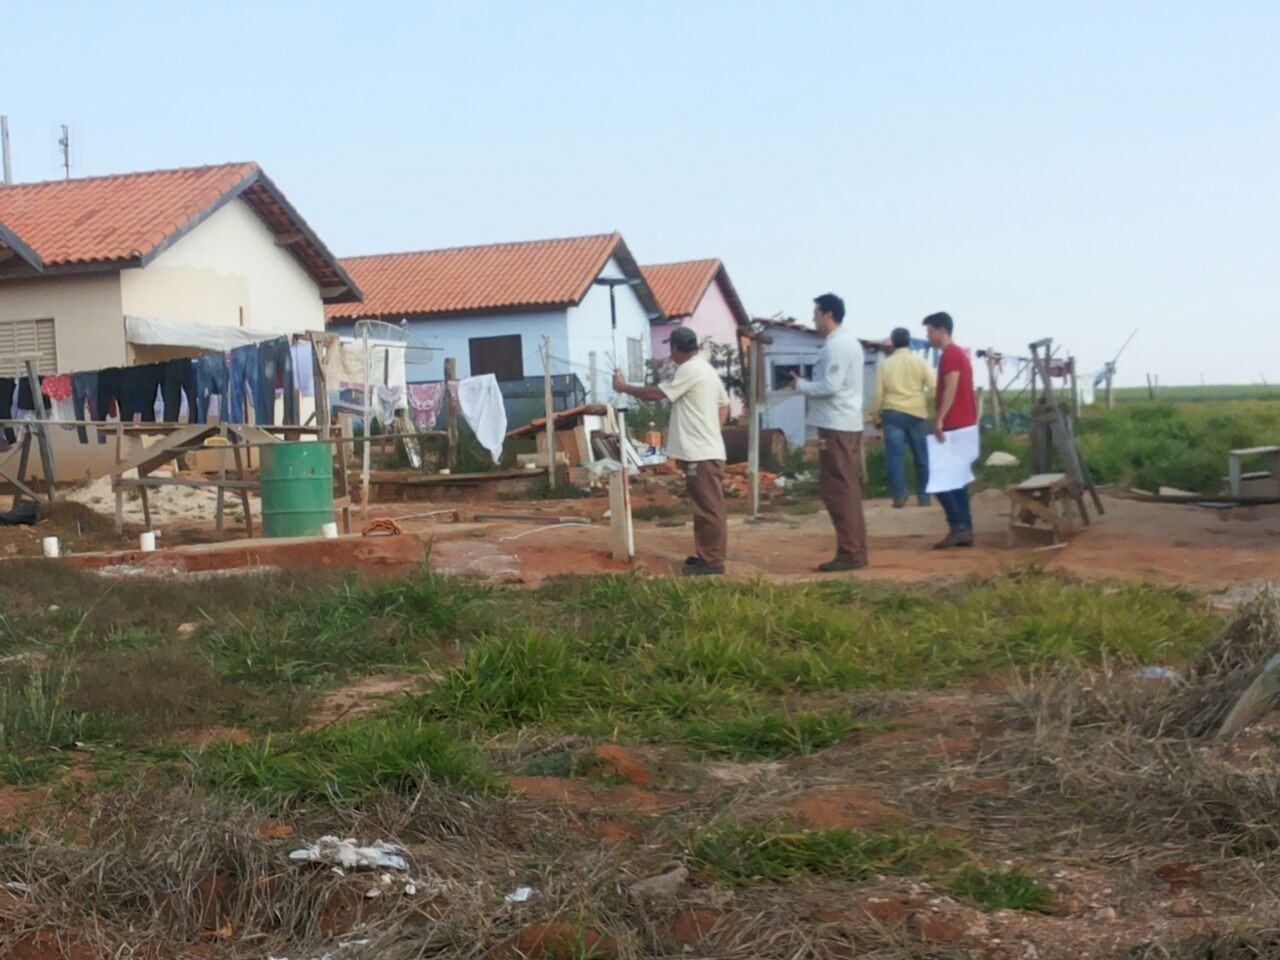 Parceria com Itesp regulariza áreas no Bairro Pedra Branca em Itararé (SP)